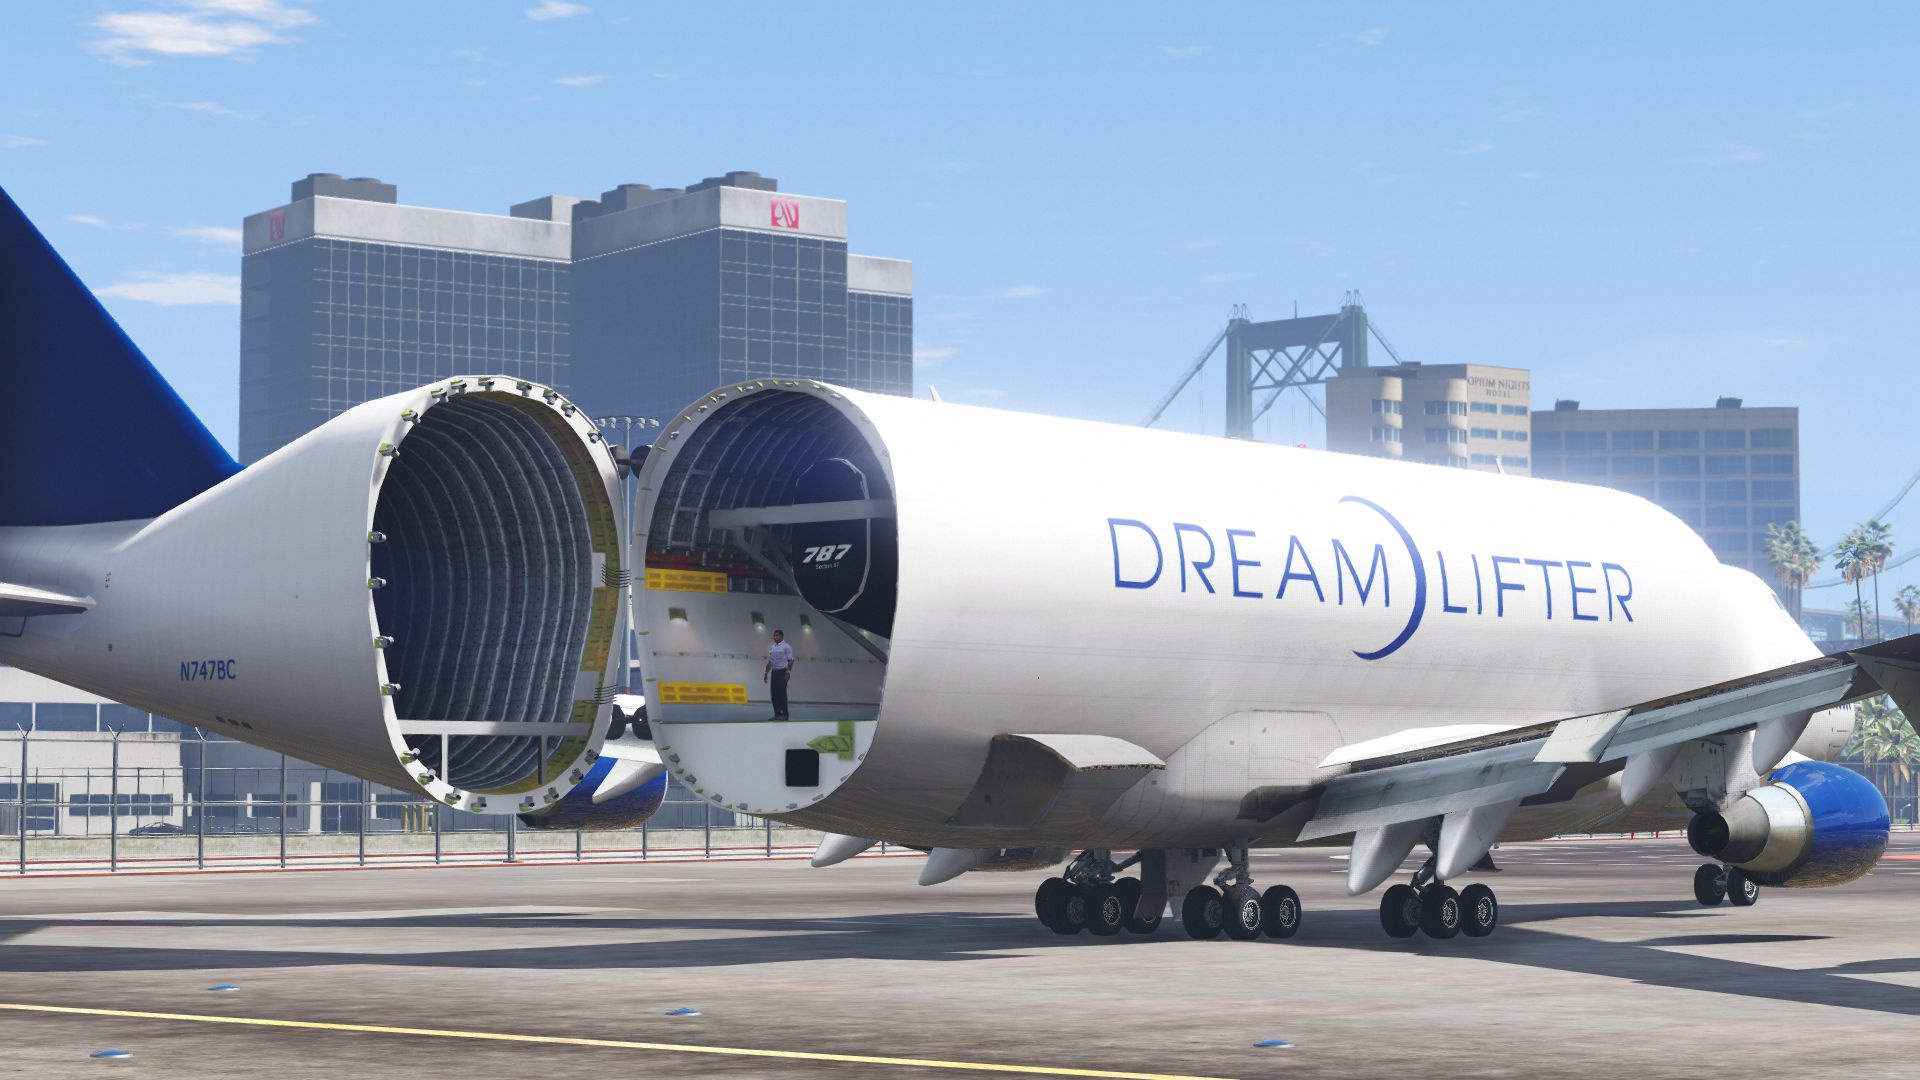 RÃ©sultat de recherche d'images pour "Boeing Dreamlifter"